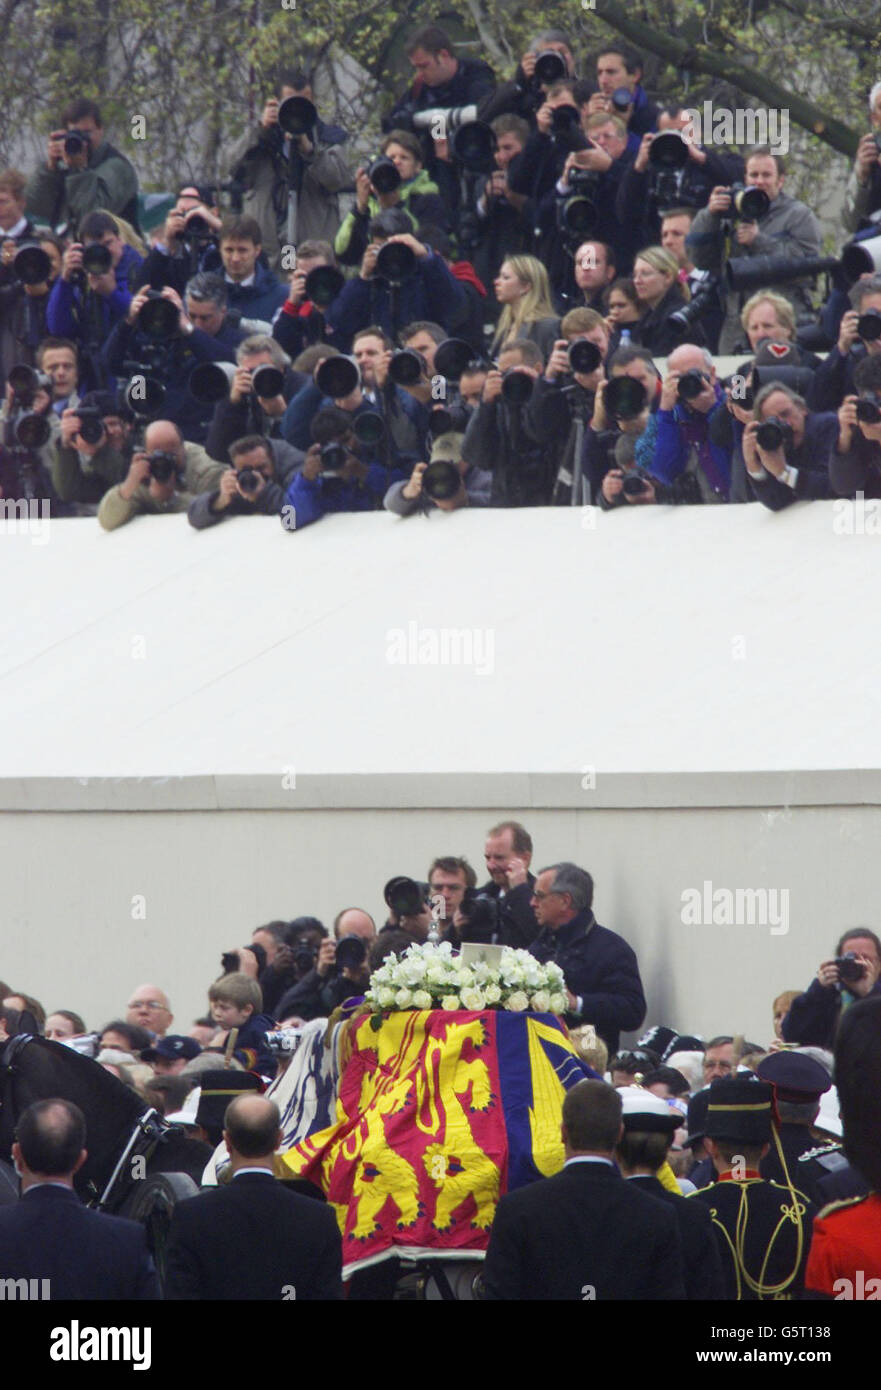 Fotografen sehen den Sarg der Queen Mother während ihrer Trauerprozession im Zentrum von London. Königliche Würdenträger und Politiker aus der ganzen Welt haben sich in der Westminster Abbey versammelt, um der Königinnen-Mutter ihren Respekt zu erweisen. * die im Alter von 101 Jahren gestorben sind. * Sie wird neben ihrem verstorbenen Ehemann König George VI. In der St. George's Chapel in Windsor interniert Stockfoto